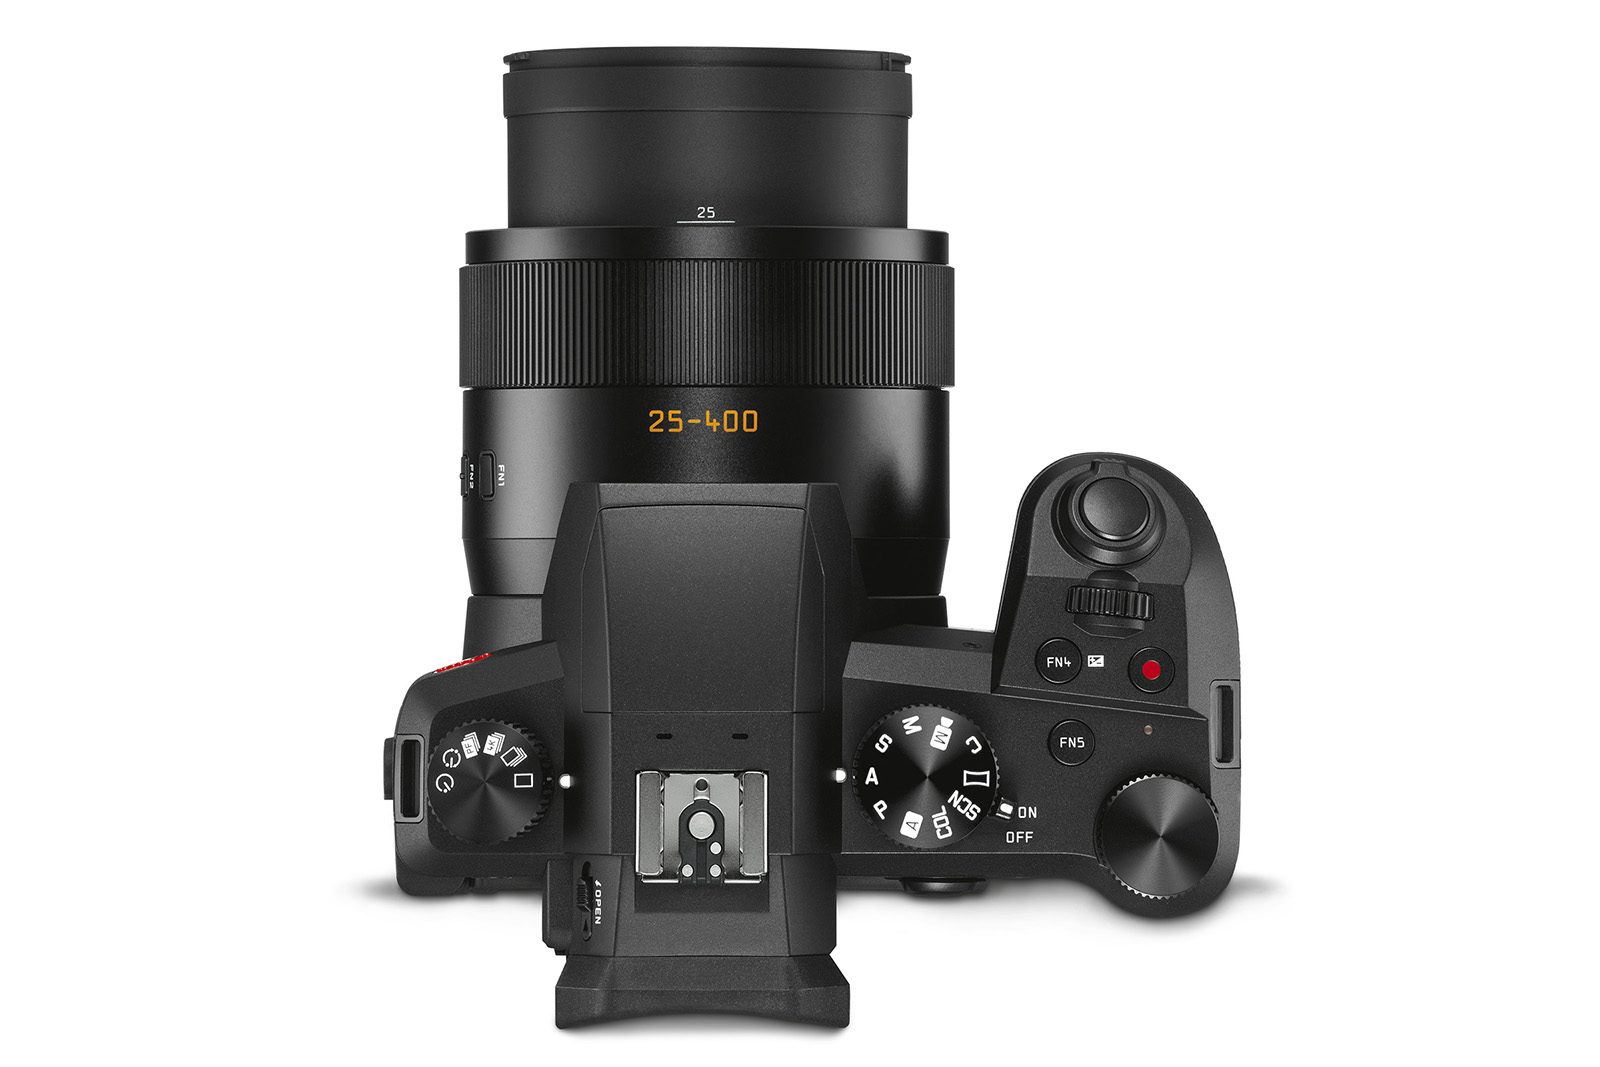 Leica Announces V-Lux 5 Superzoom Camera